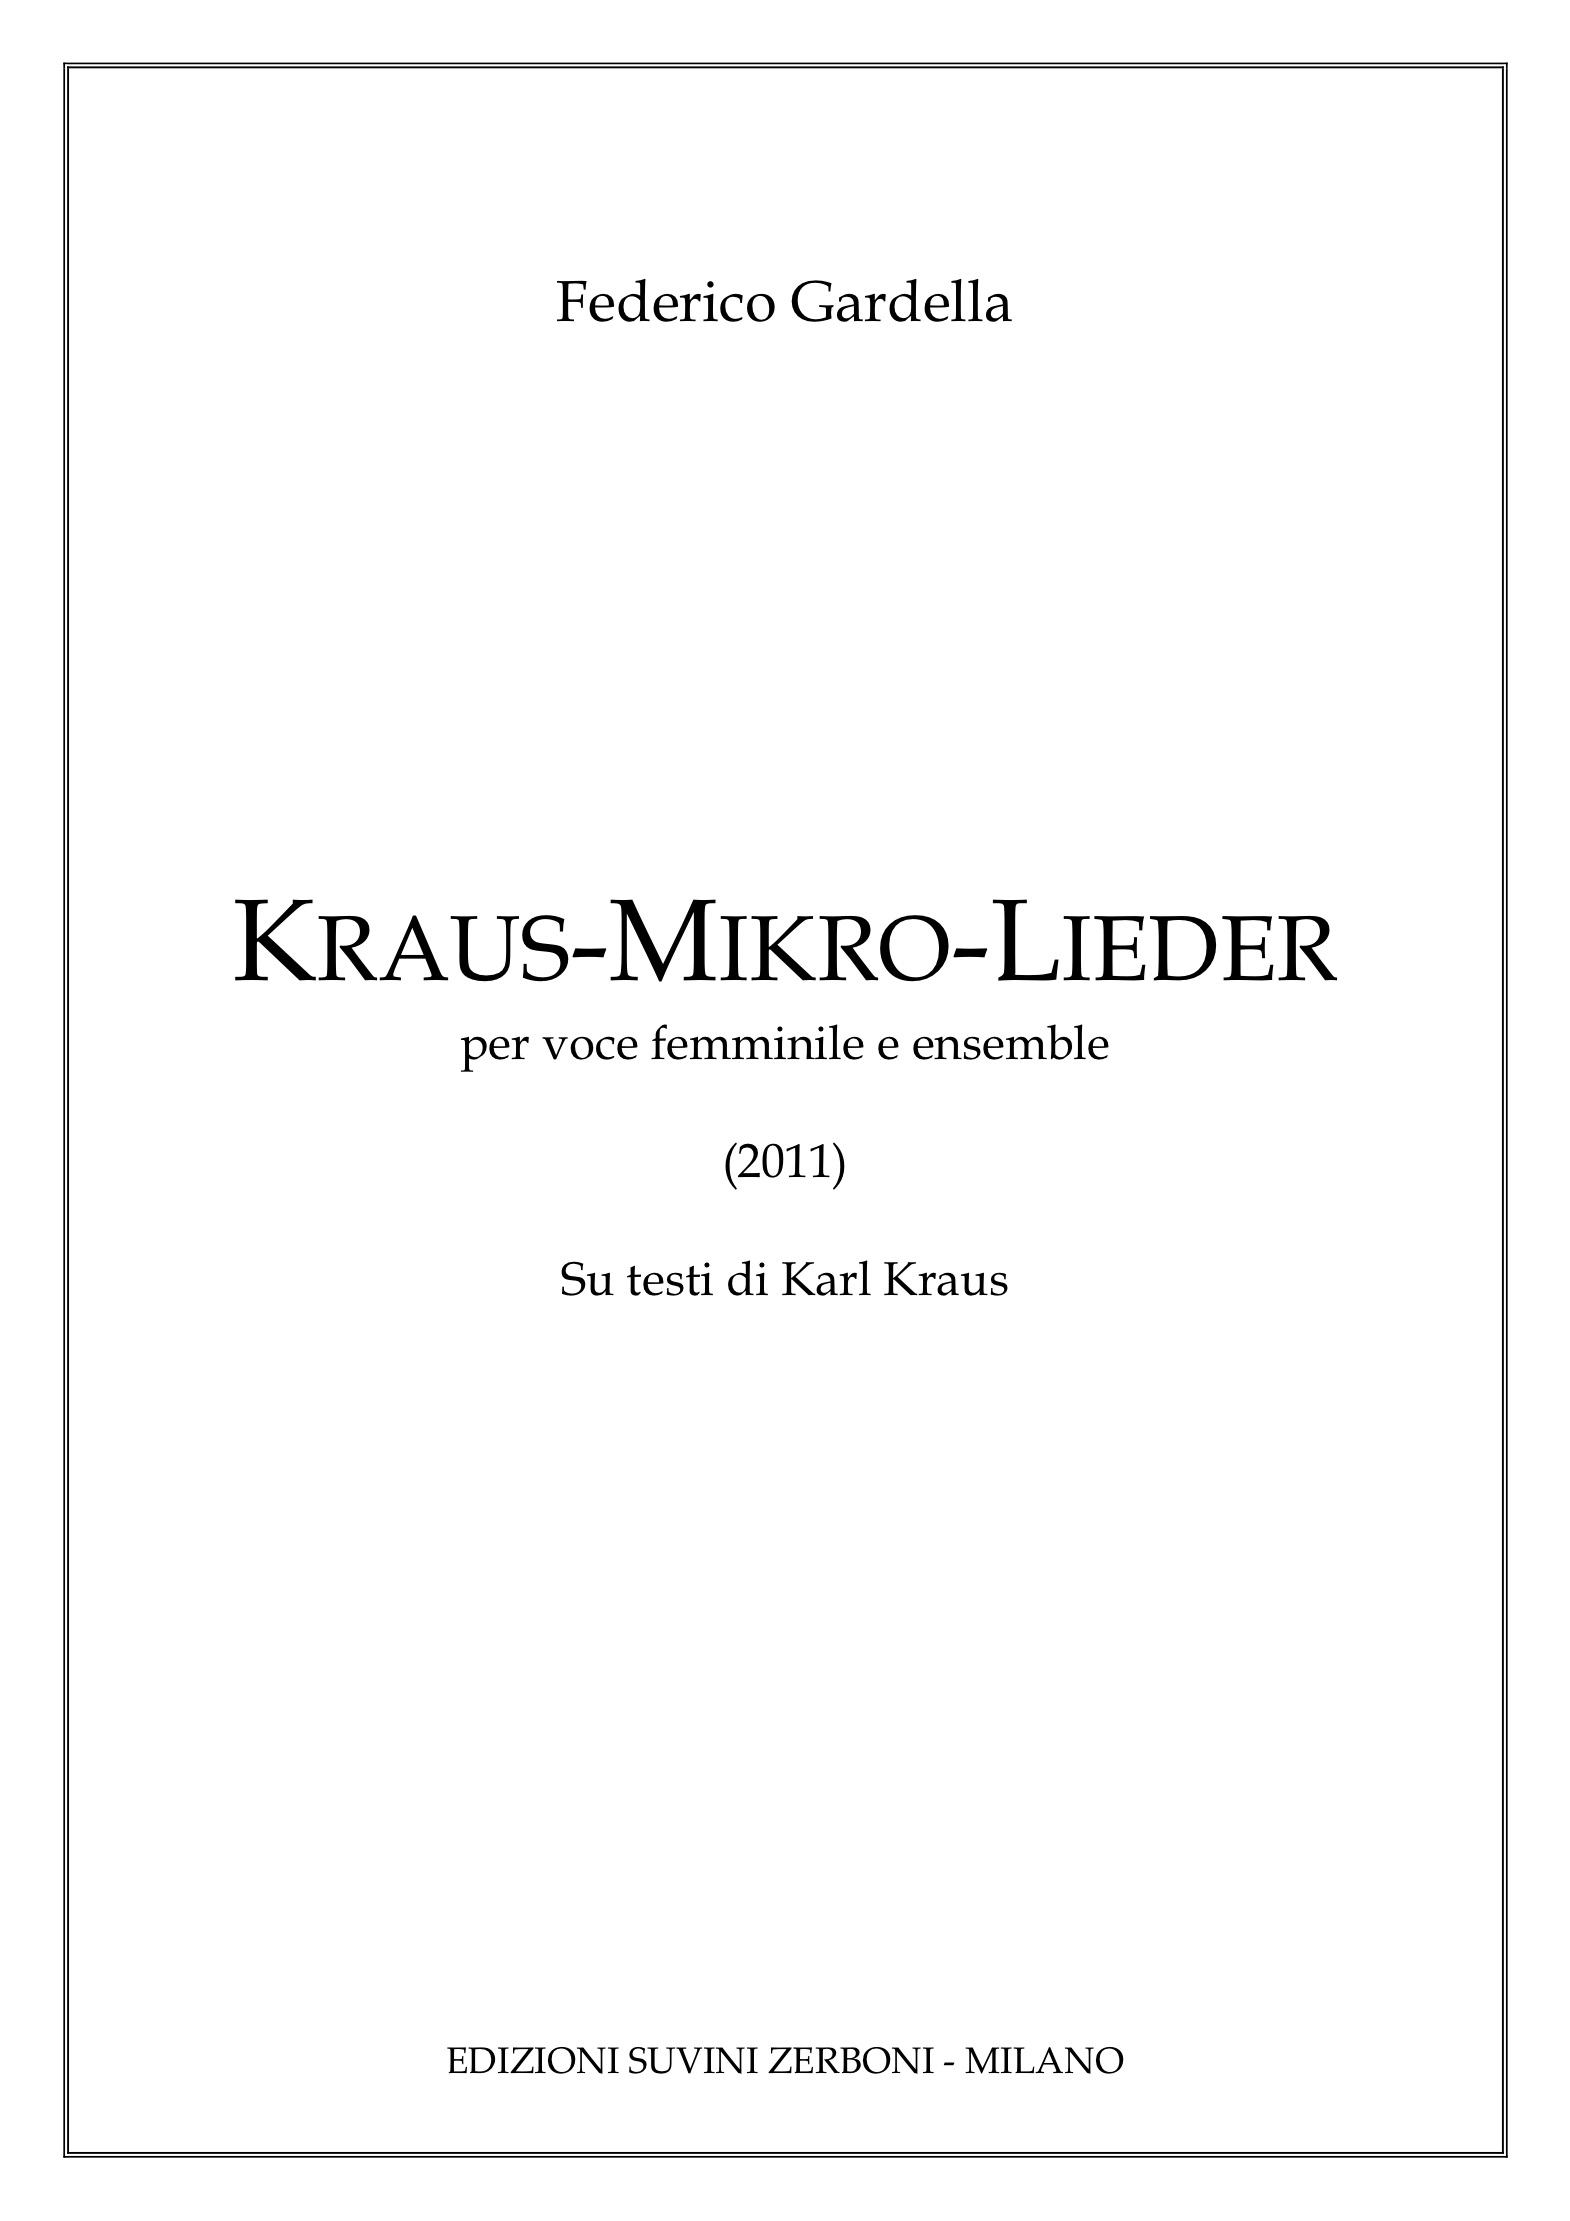 Kraus Mikro Lieder_Gardella 1